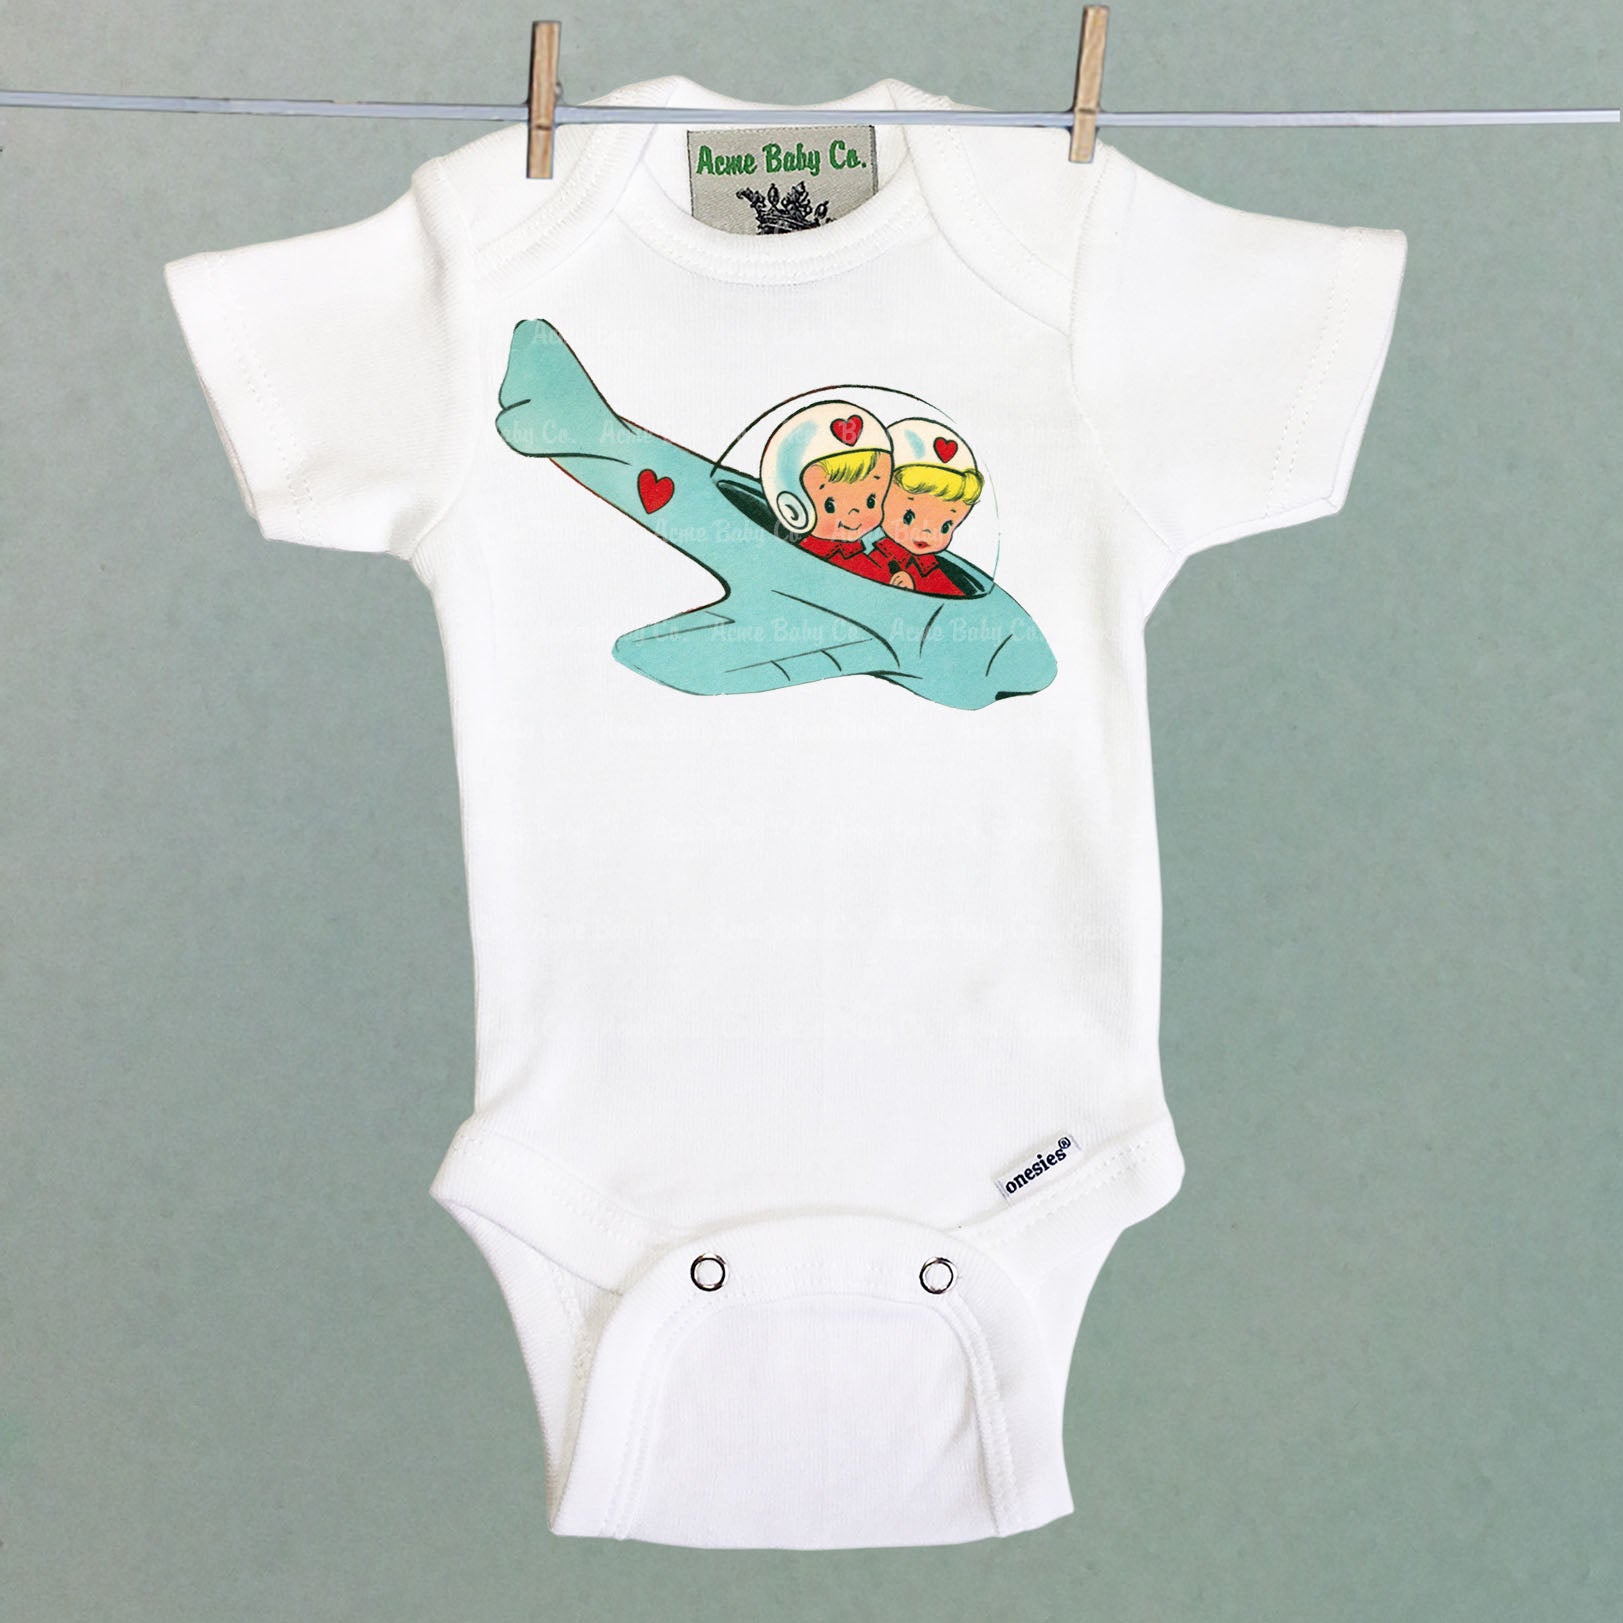 Space Kids One Piece Baby Bodysuit